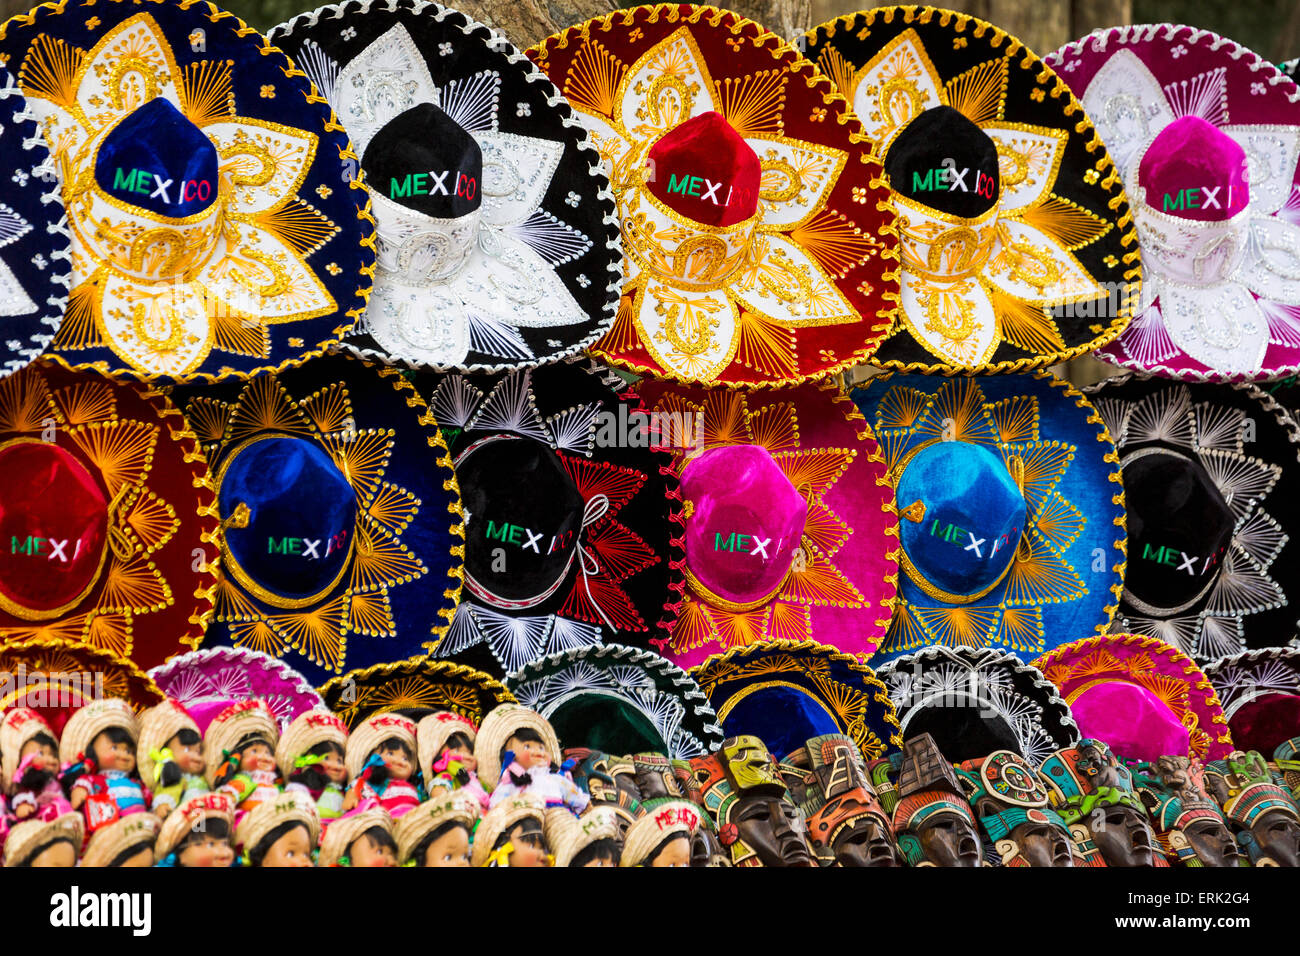 Sombreros mexicains colorés, masques maya et mexicaine sur les poupées ; affichage de Chichen Itza, Yucatan, Mexique Banque D'Images